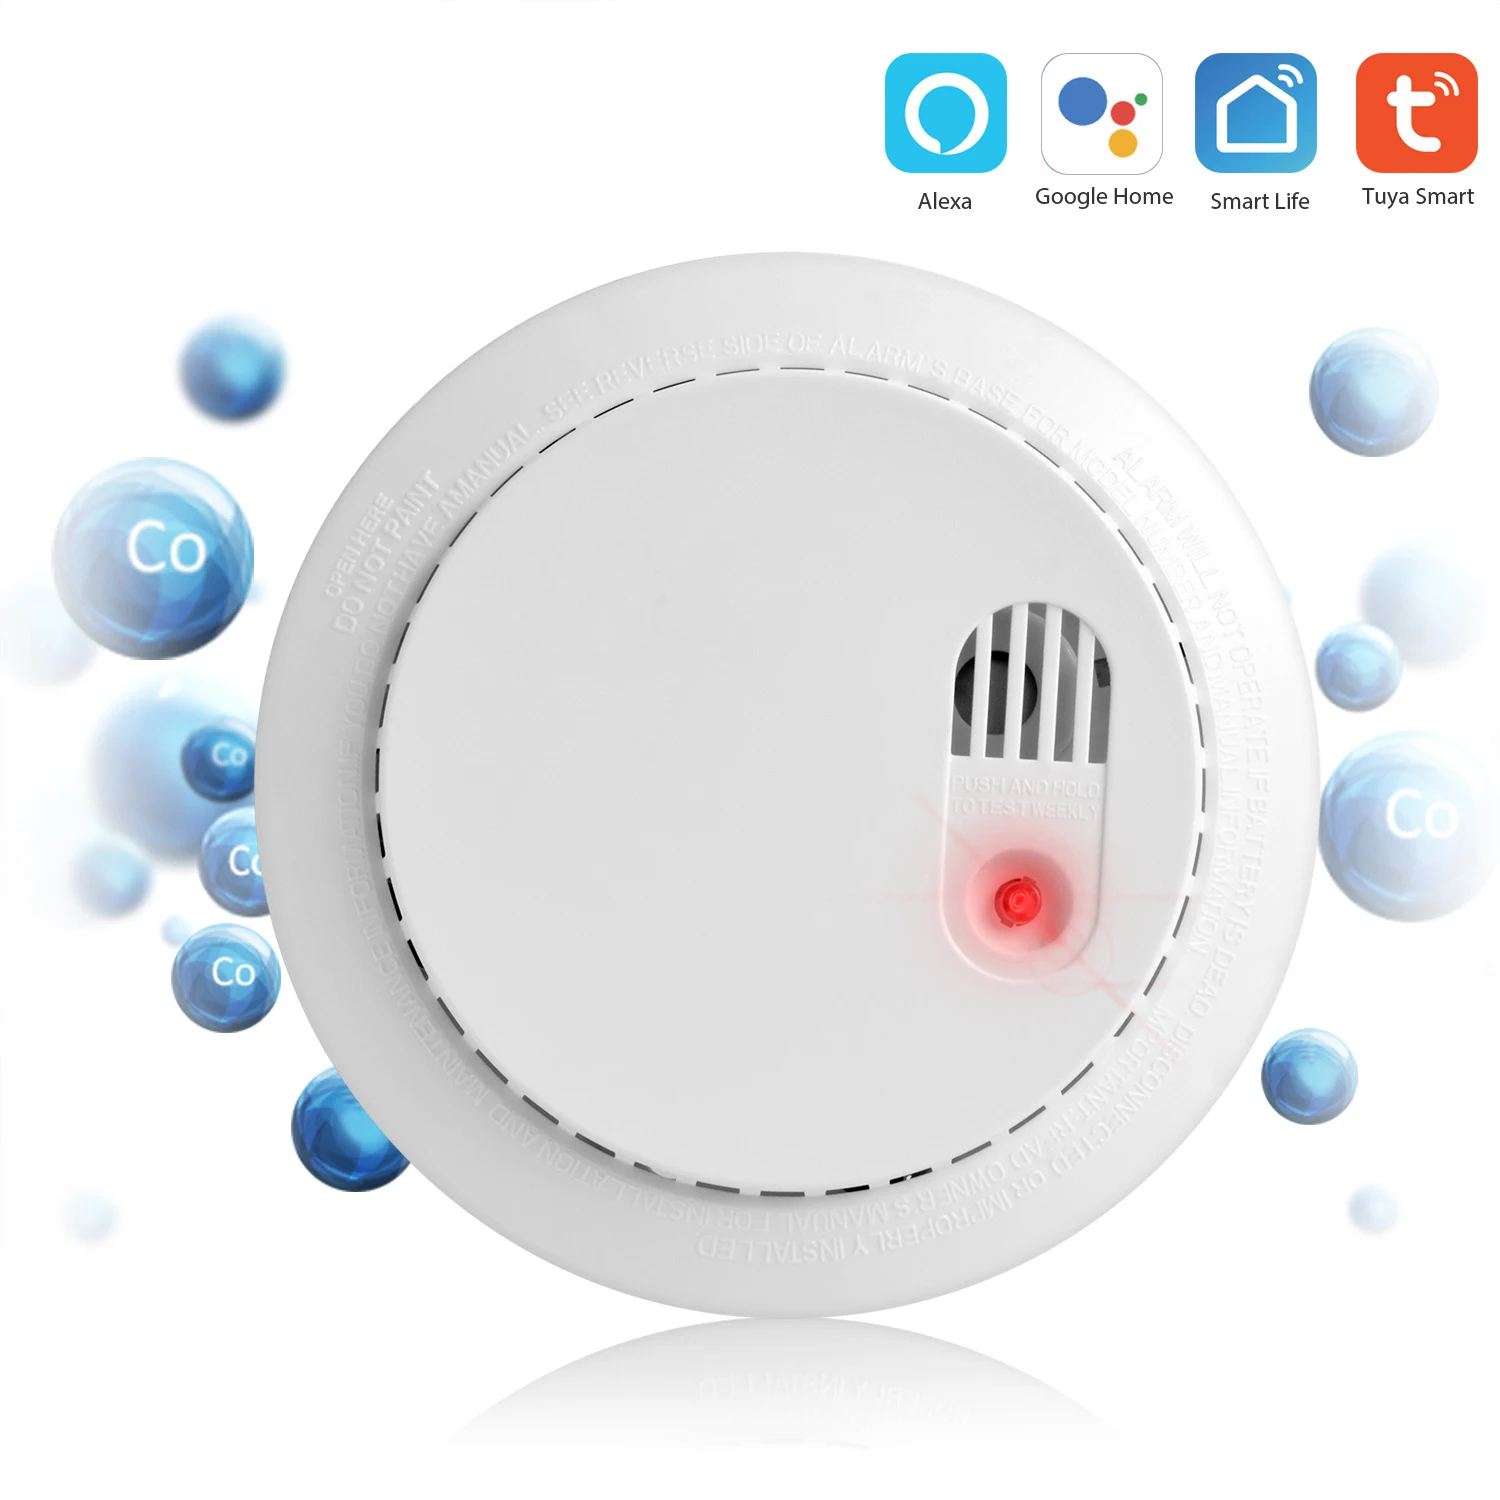 Tuya Wifi детектор угарного газа Wifi датчик дыма охранная сигнализация 85dB Предупреждение с приложением SmartLife/Tuya дистанционное управление